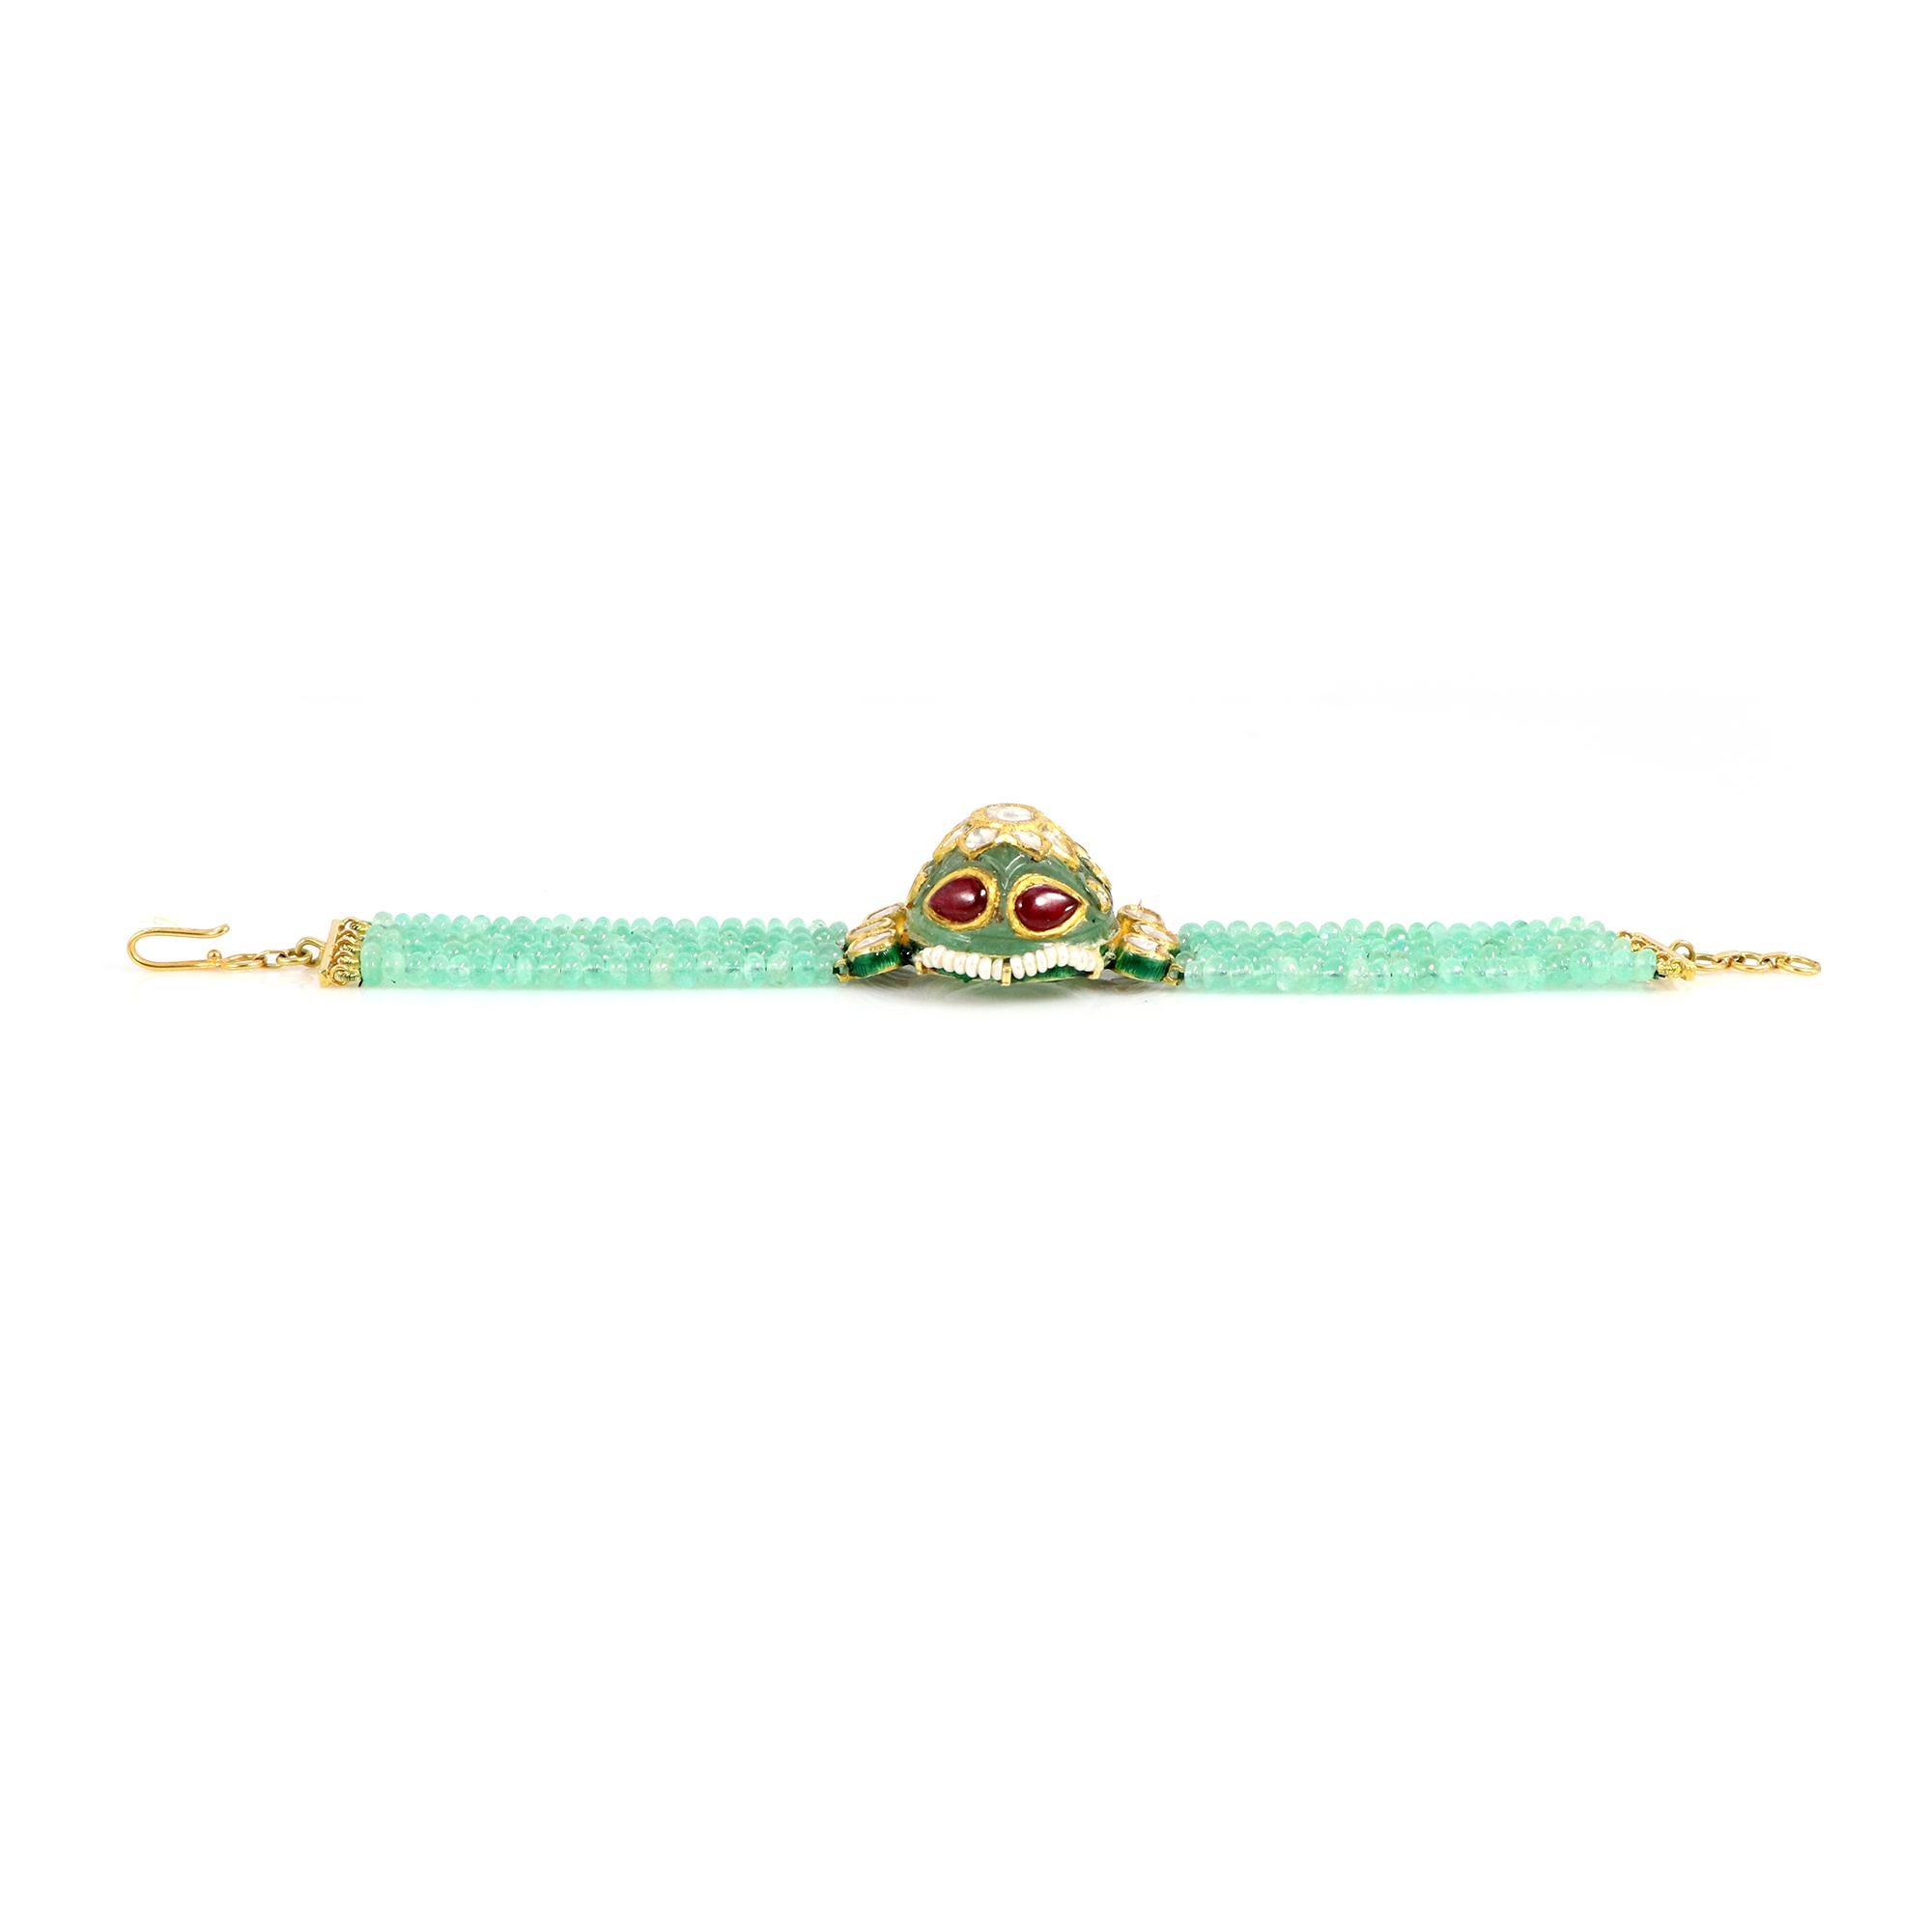 Dieses elegante Armband mit geschnitztem sambischem Smaragd ist mit faszinierenden Rubinen und glänzenden Perlen verziert und auf der Rückseite emailliert. Das mit viel Liebe zum Detail handgefertigte Stück ist ein Beweis für zeitlose Eleganz. Der